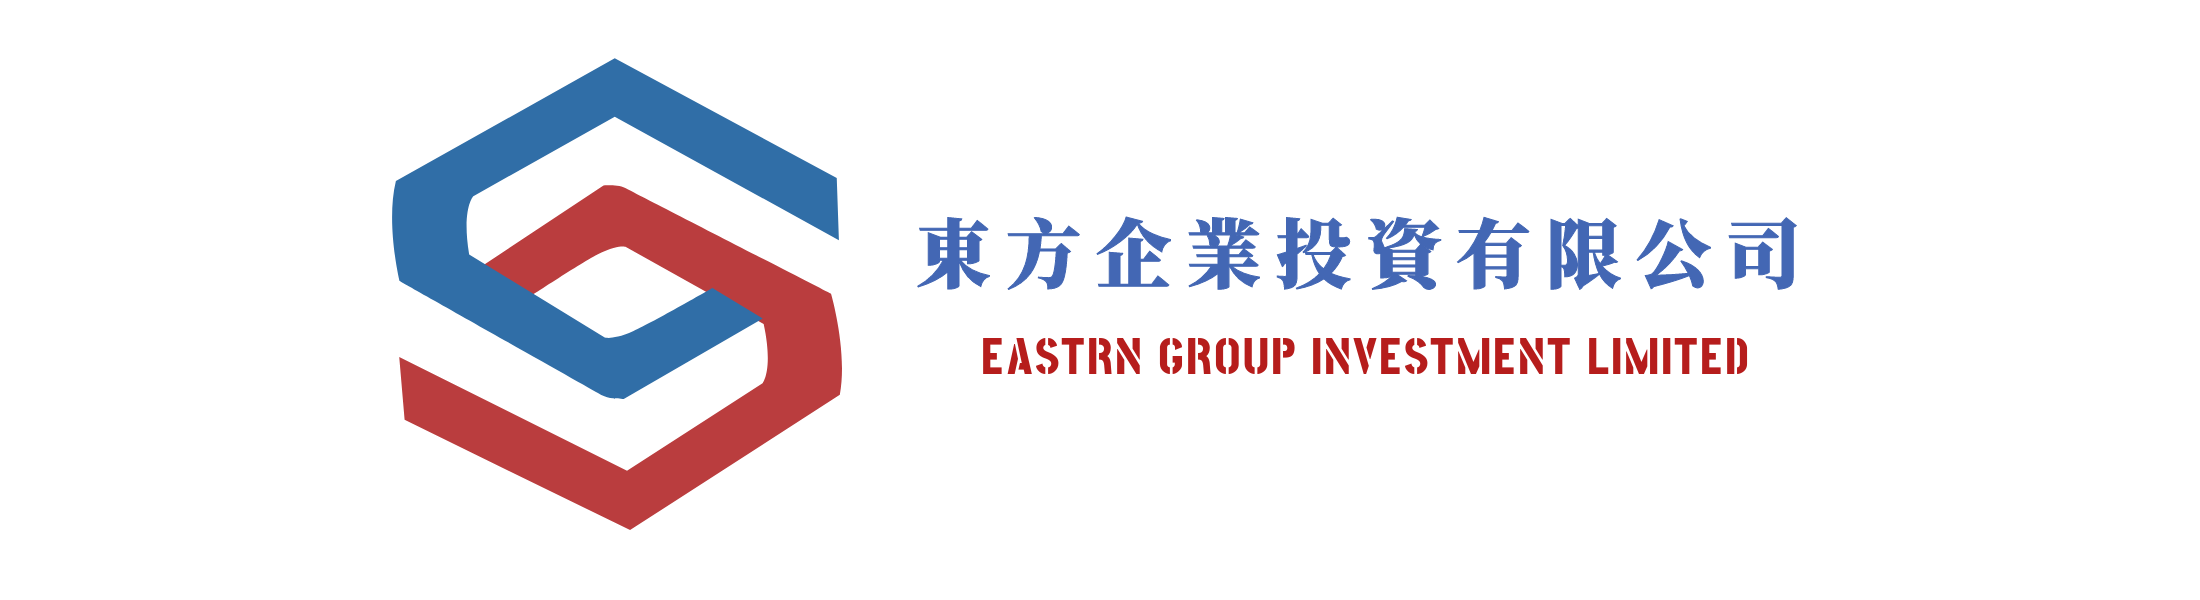 東方企業投資